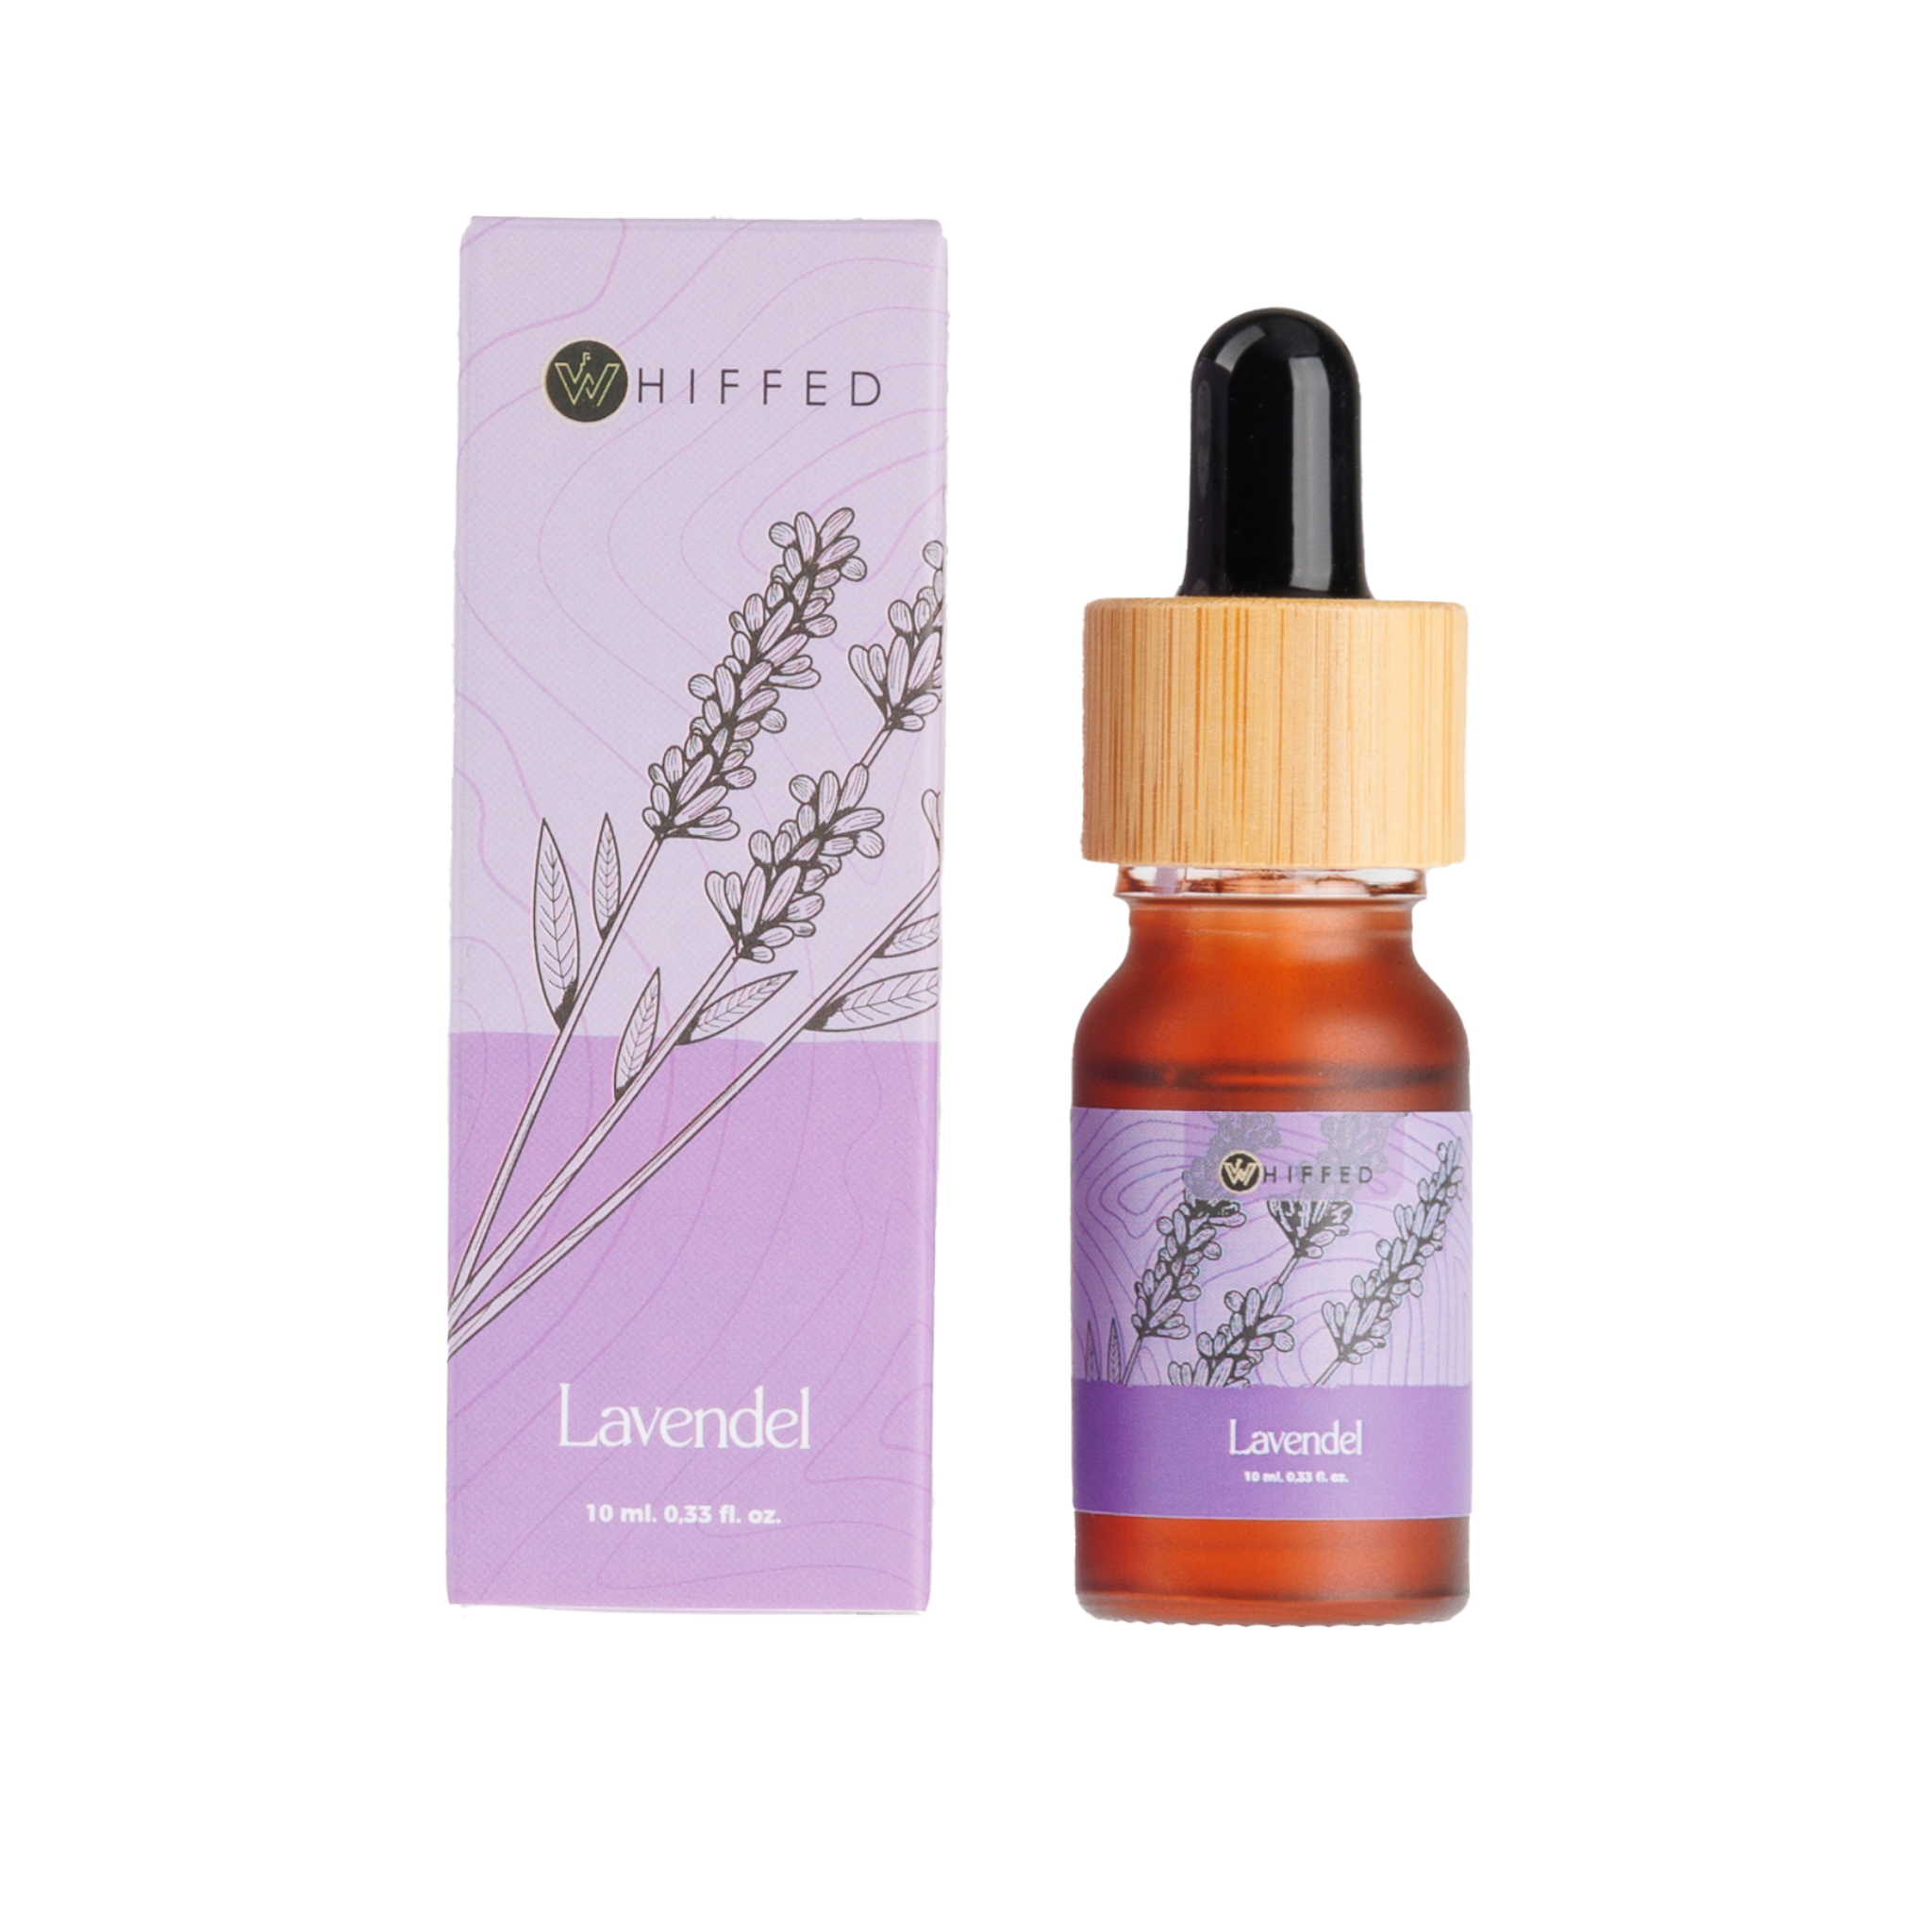 whiffed_show - 10ml flesje met lavendel etherische olie voor aromatherapie en ontspanning